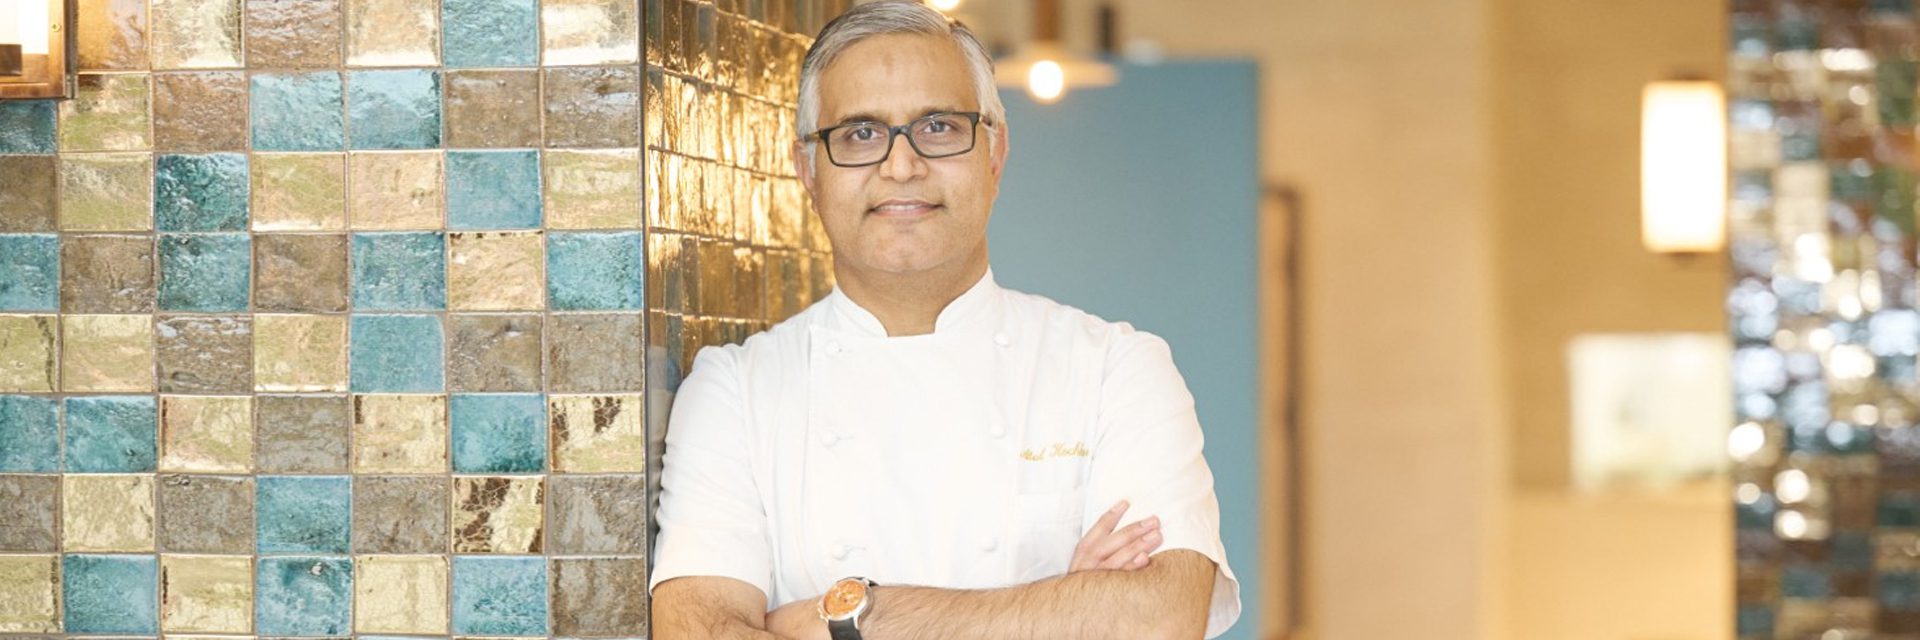 Die berühmten Restaurants des indischen Michelin-Sternekochs Atul Kochhar wachsen weiter